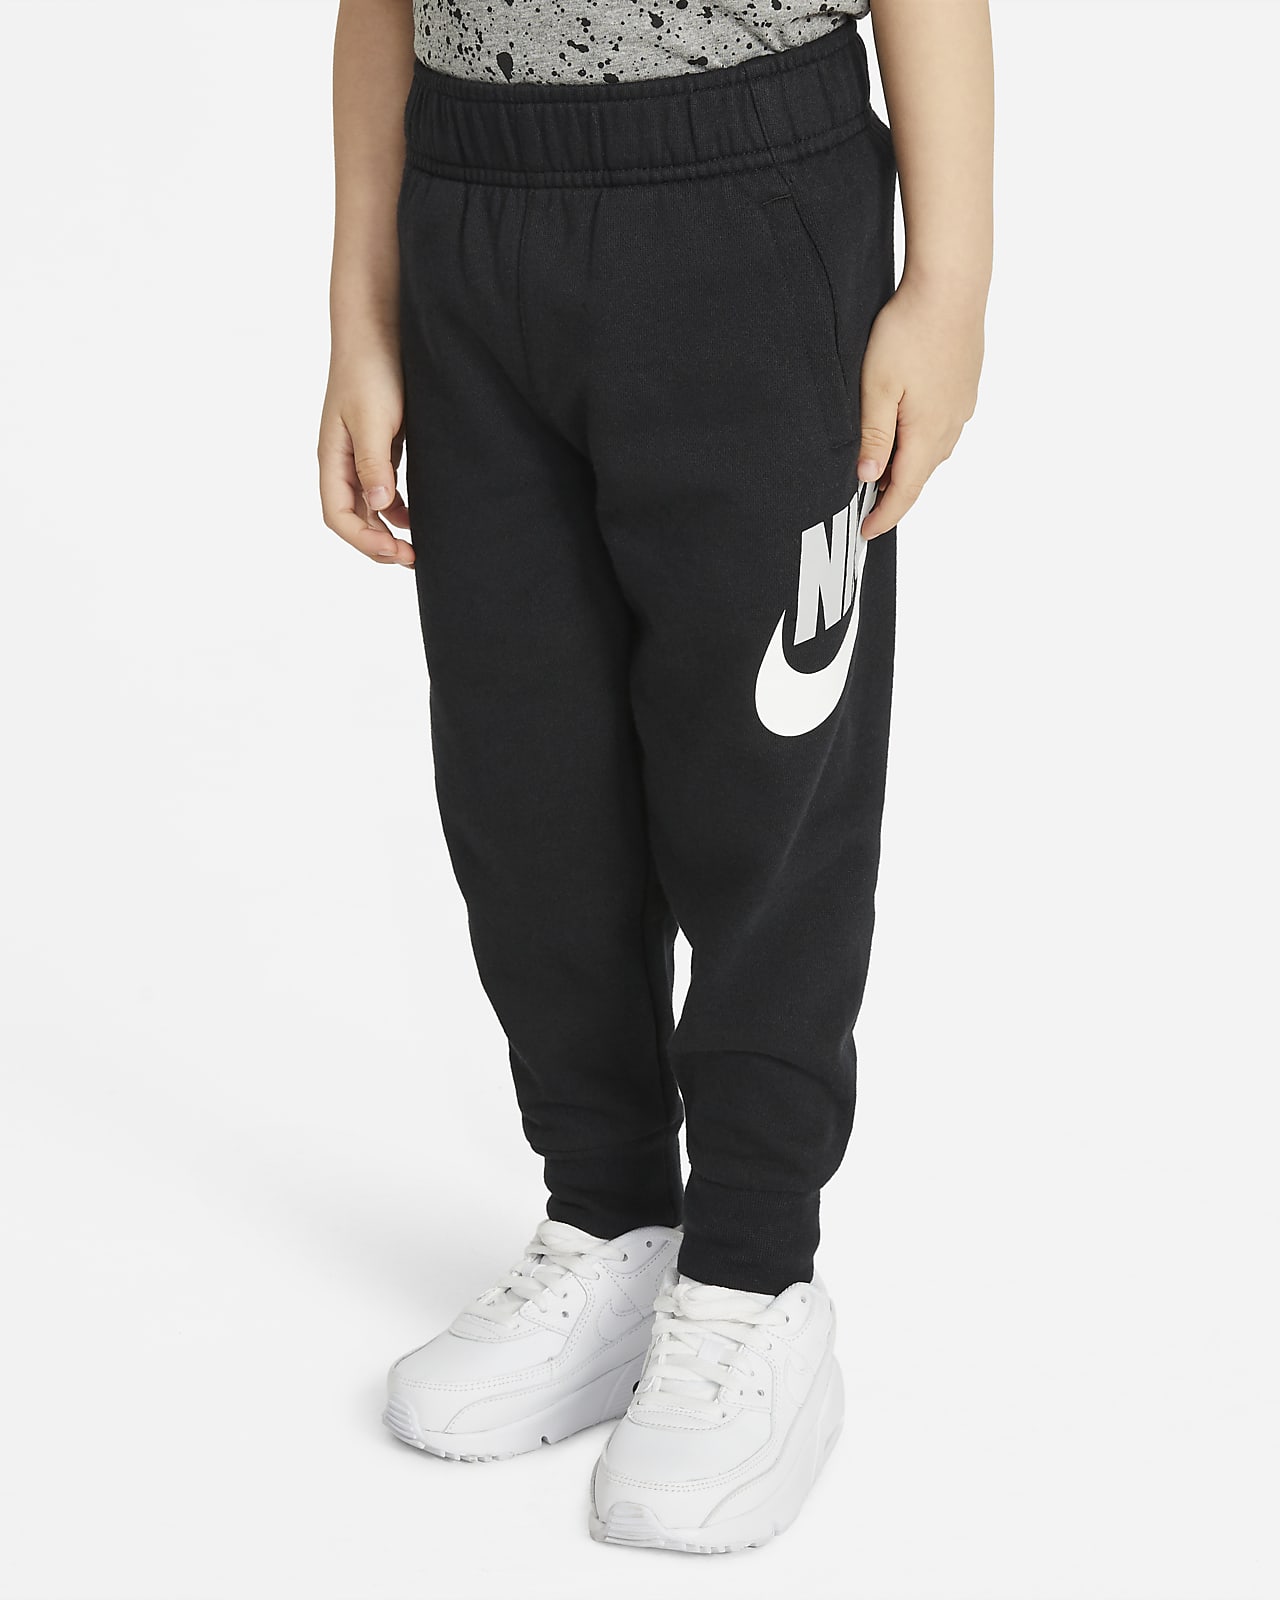 Pantalones para niños pequeños Nike Sportswear Club Fleece